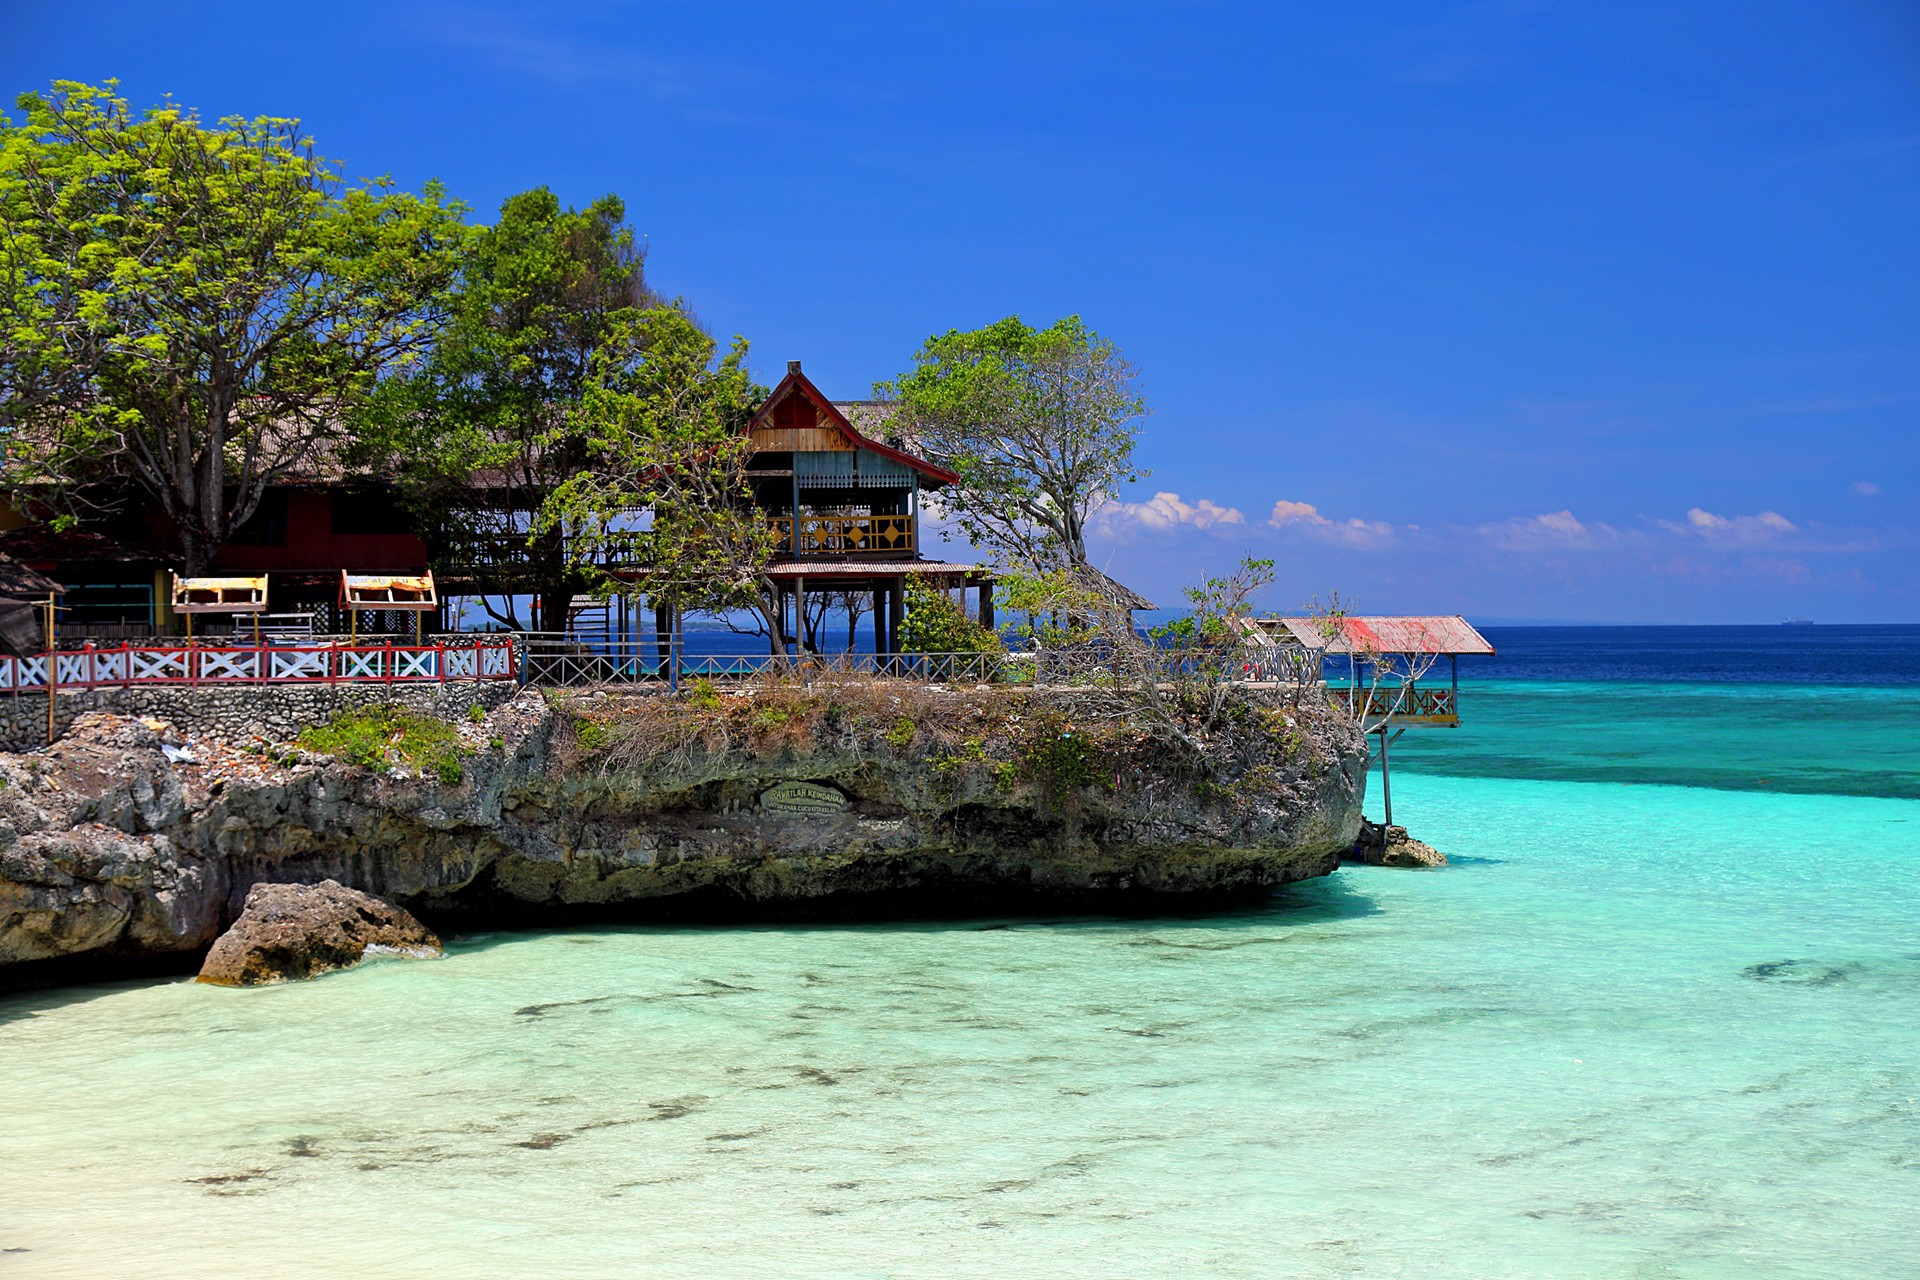 11 Tempattempat wisata yang populer di Sulawesi selatan